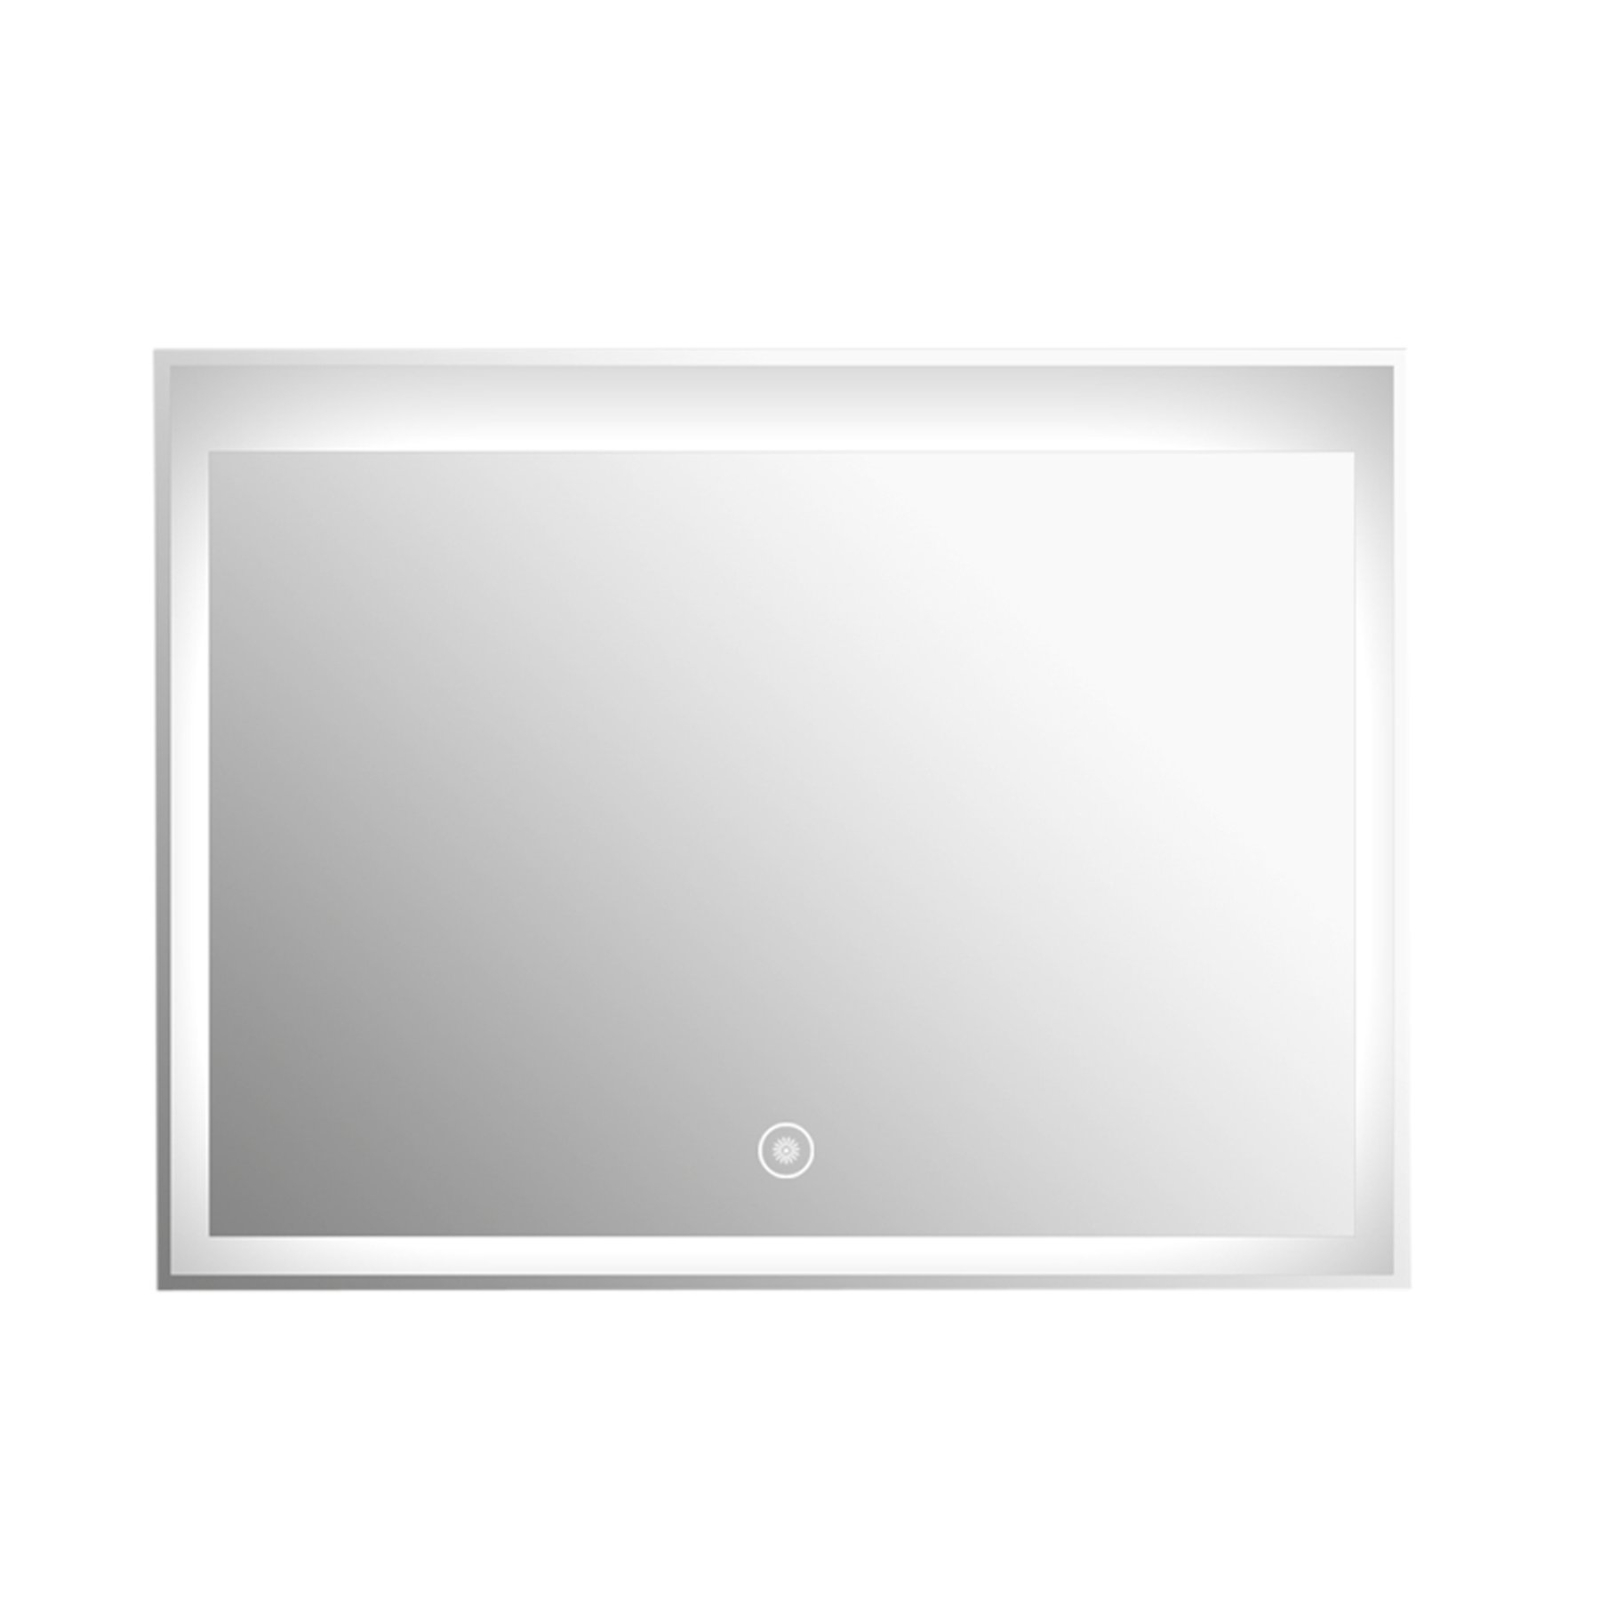 Aquamoon Mm3Lt800 Led Bathroom Mirror 31" X 24" Wall Mounted Side Switch 6000K High Lumen